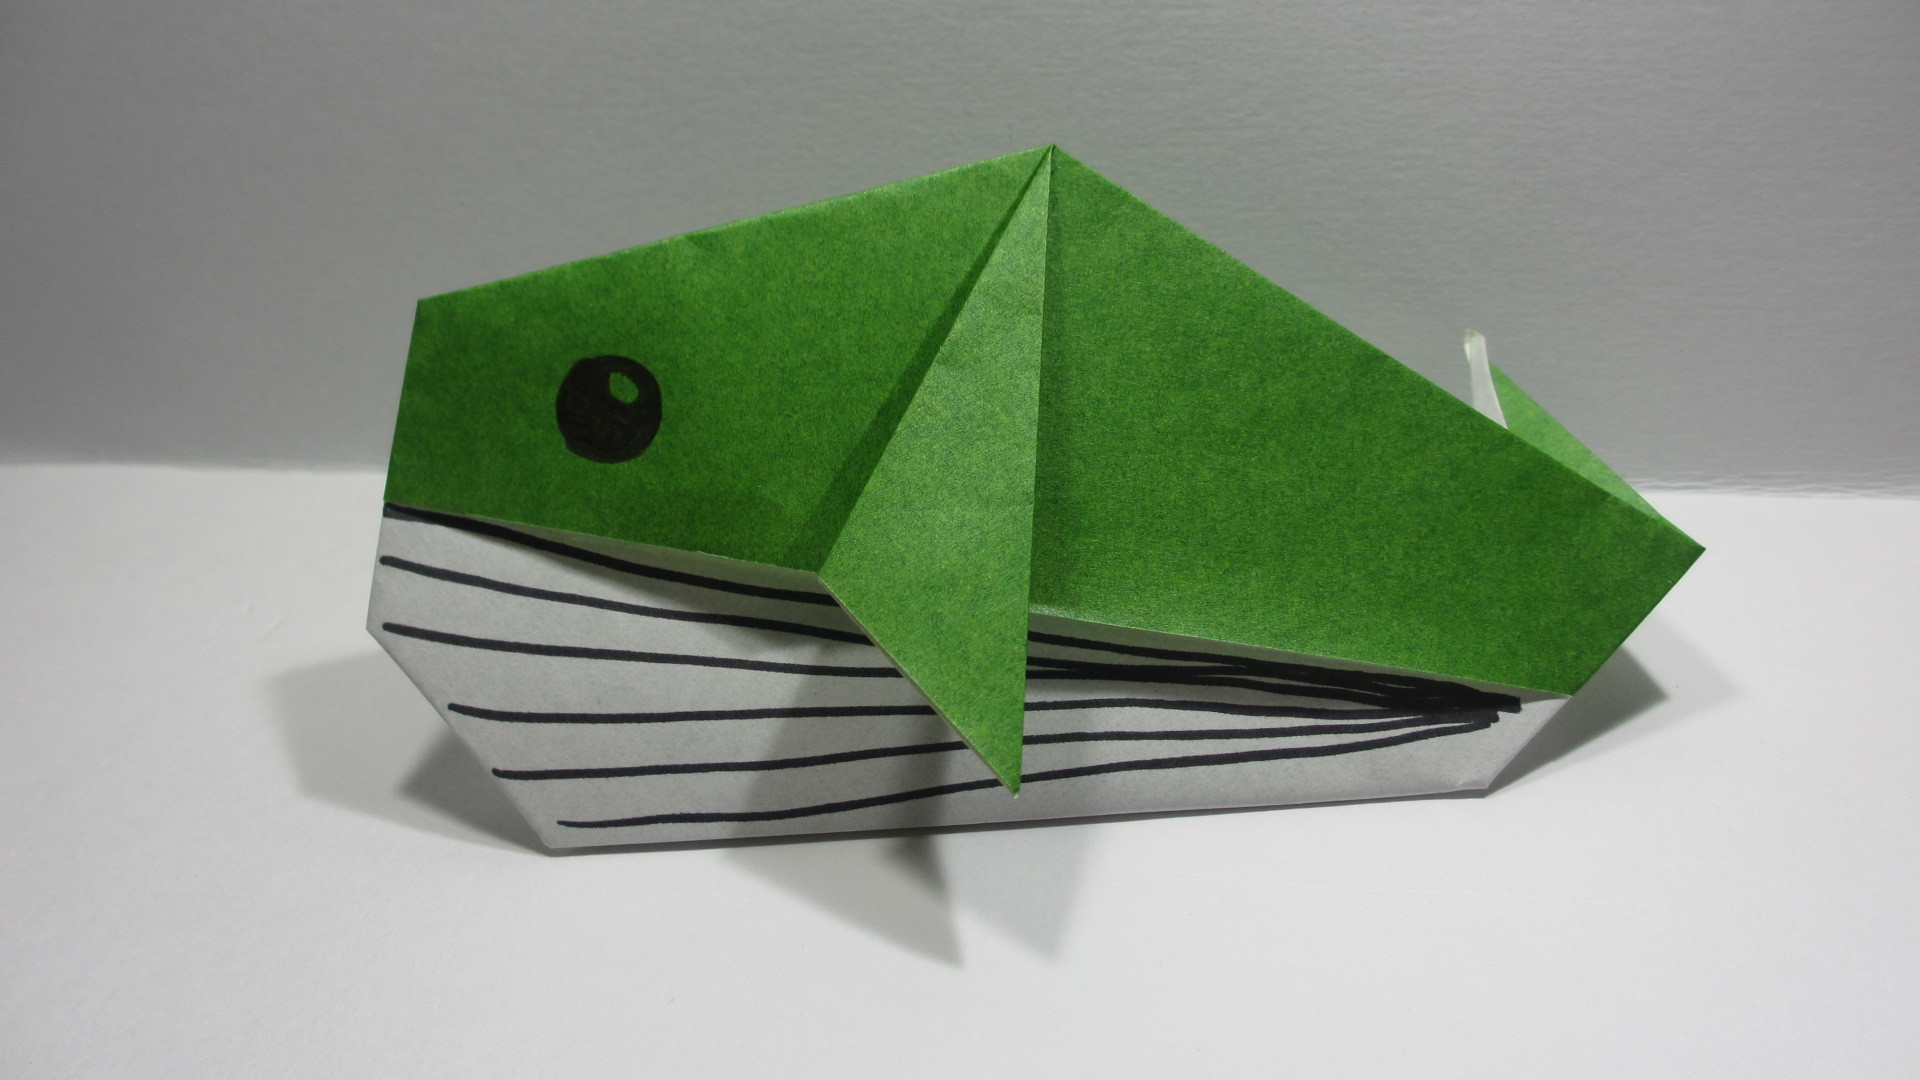 折り紙で作る さかな の種類6選 簡単にできる折り方もご紹介 暮らし の